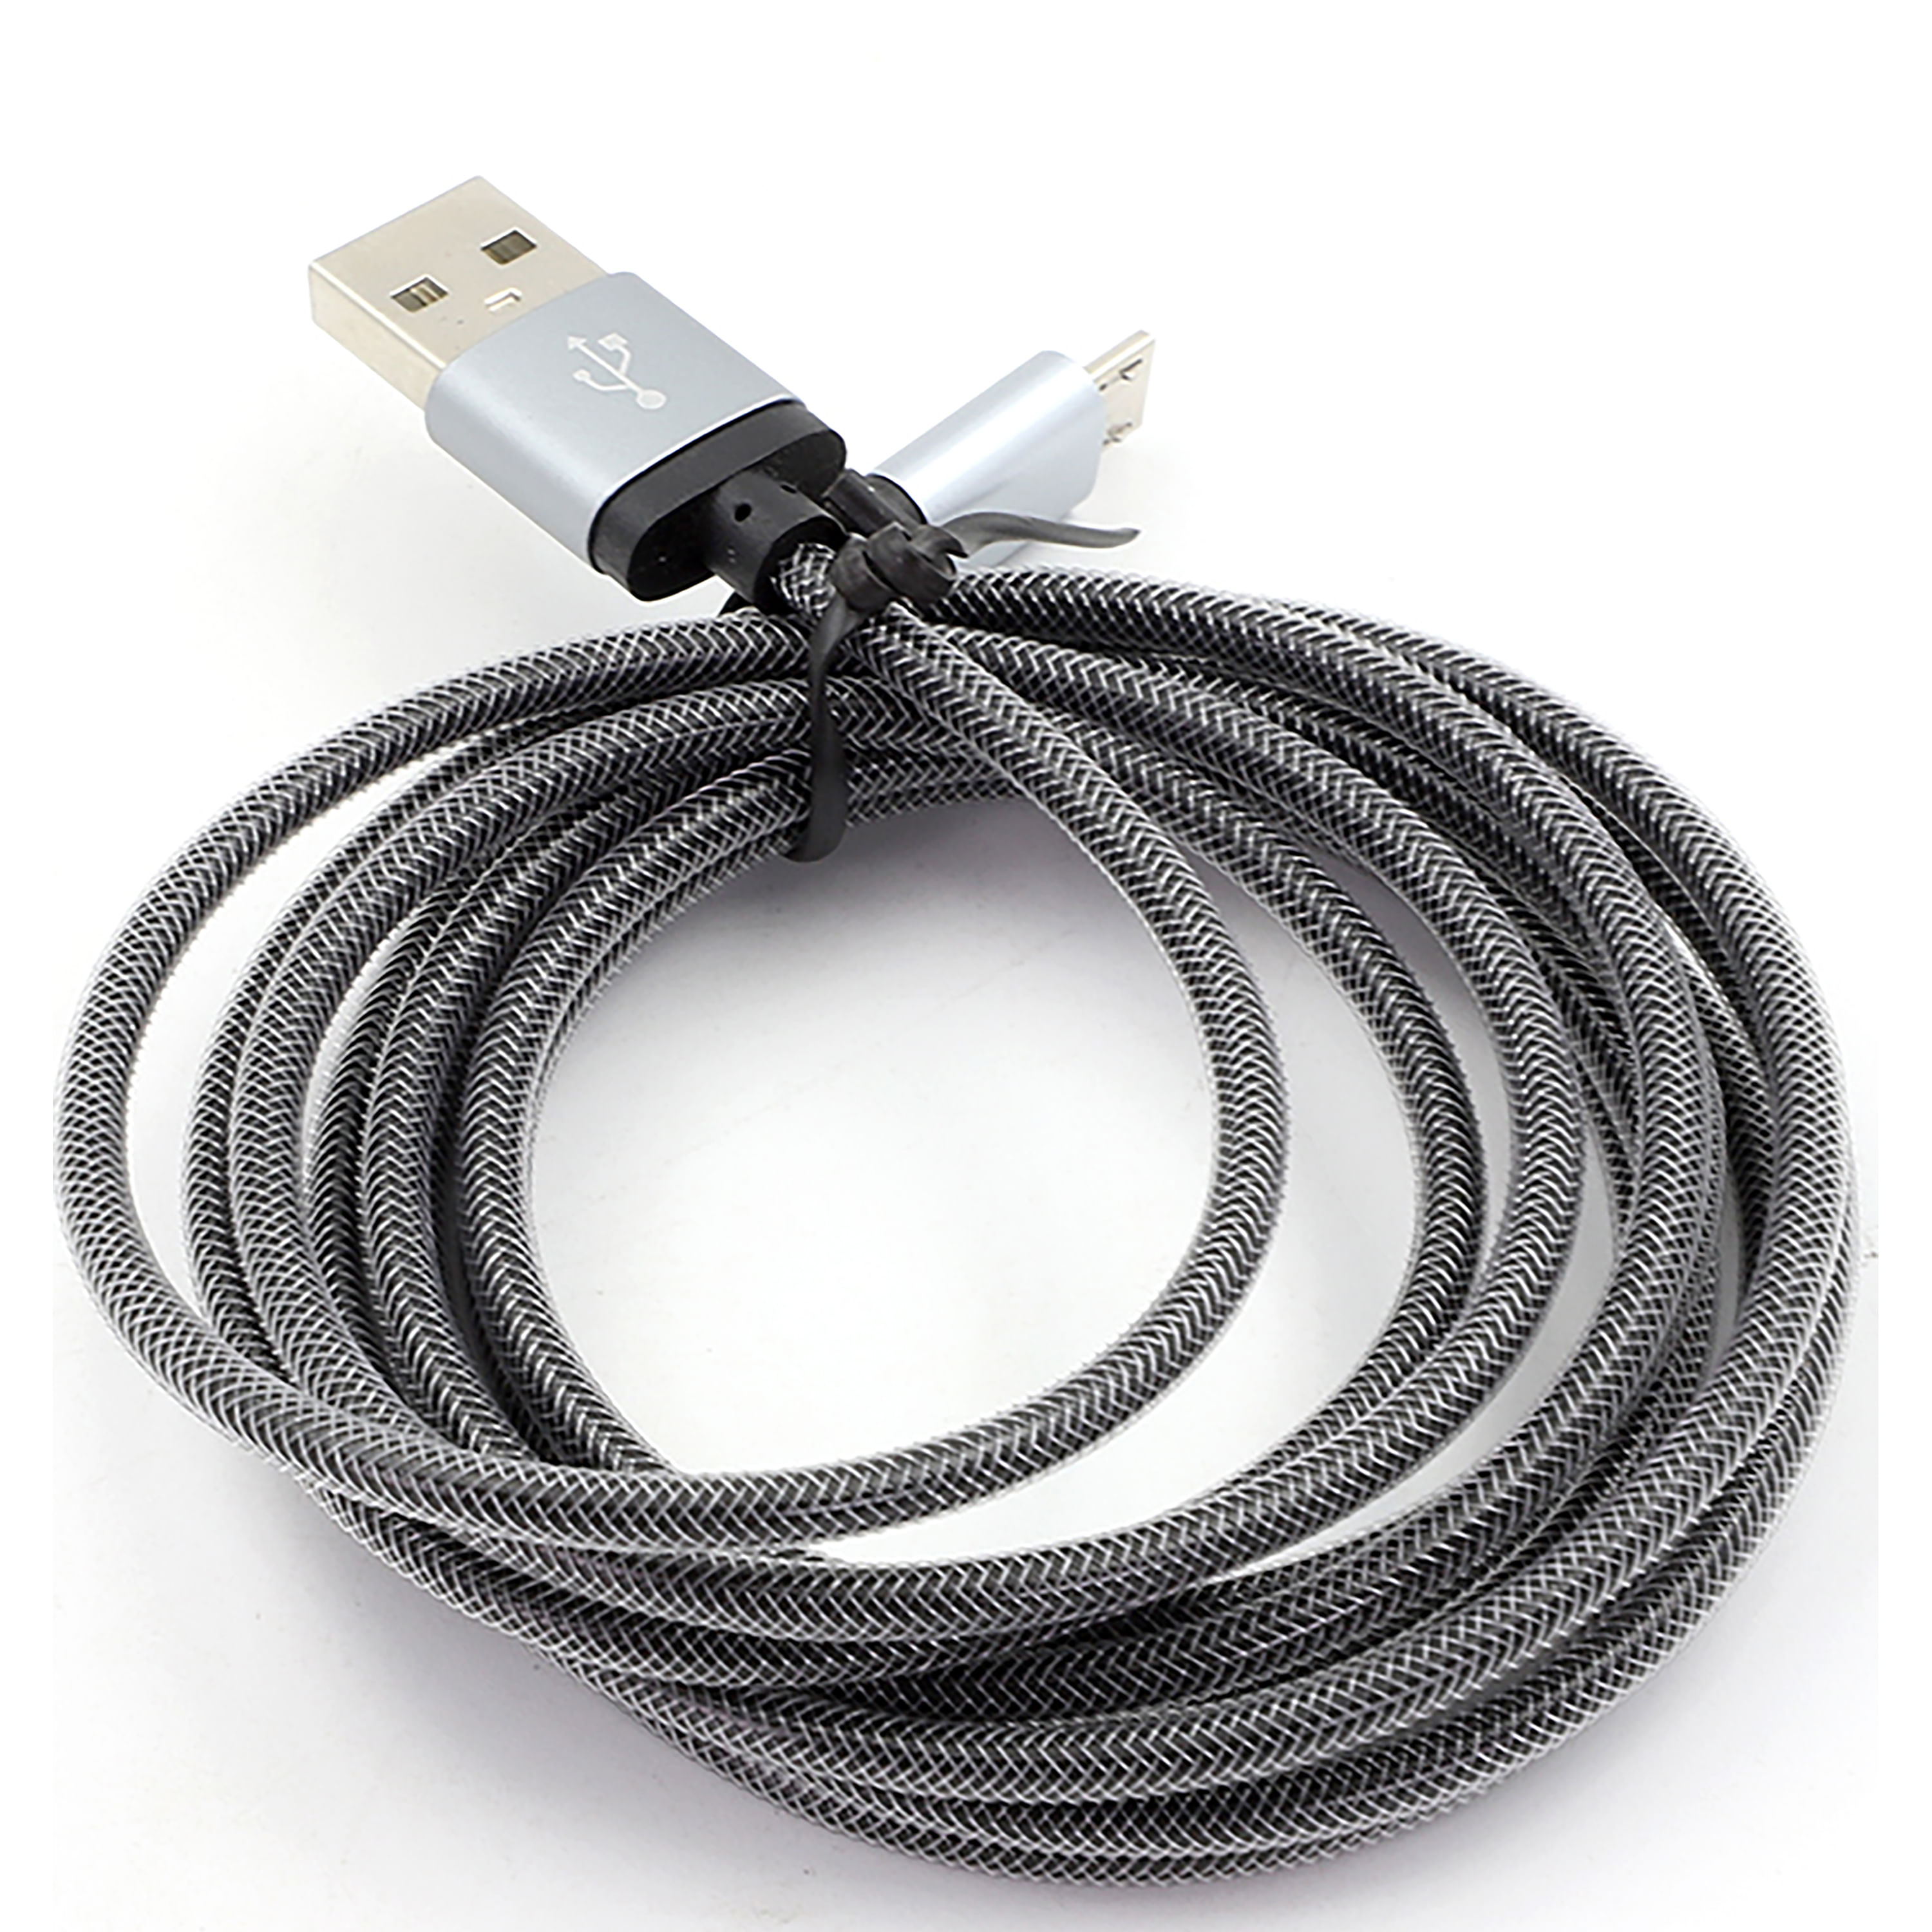 ▷ Cable Micro USB de Carga Rápida 1 Metro - Unimart Costa Rica ©